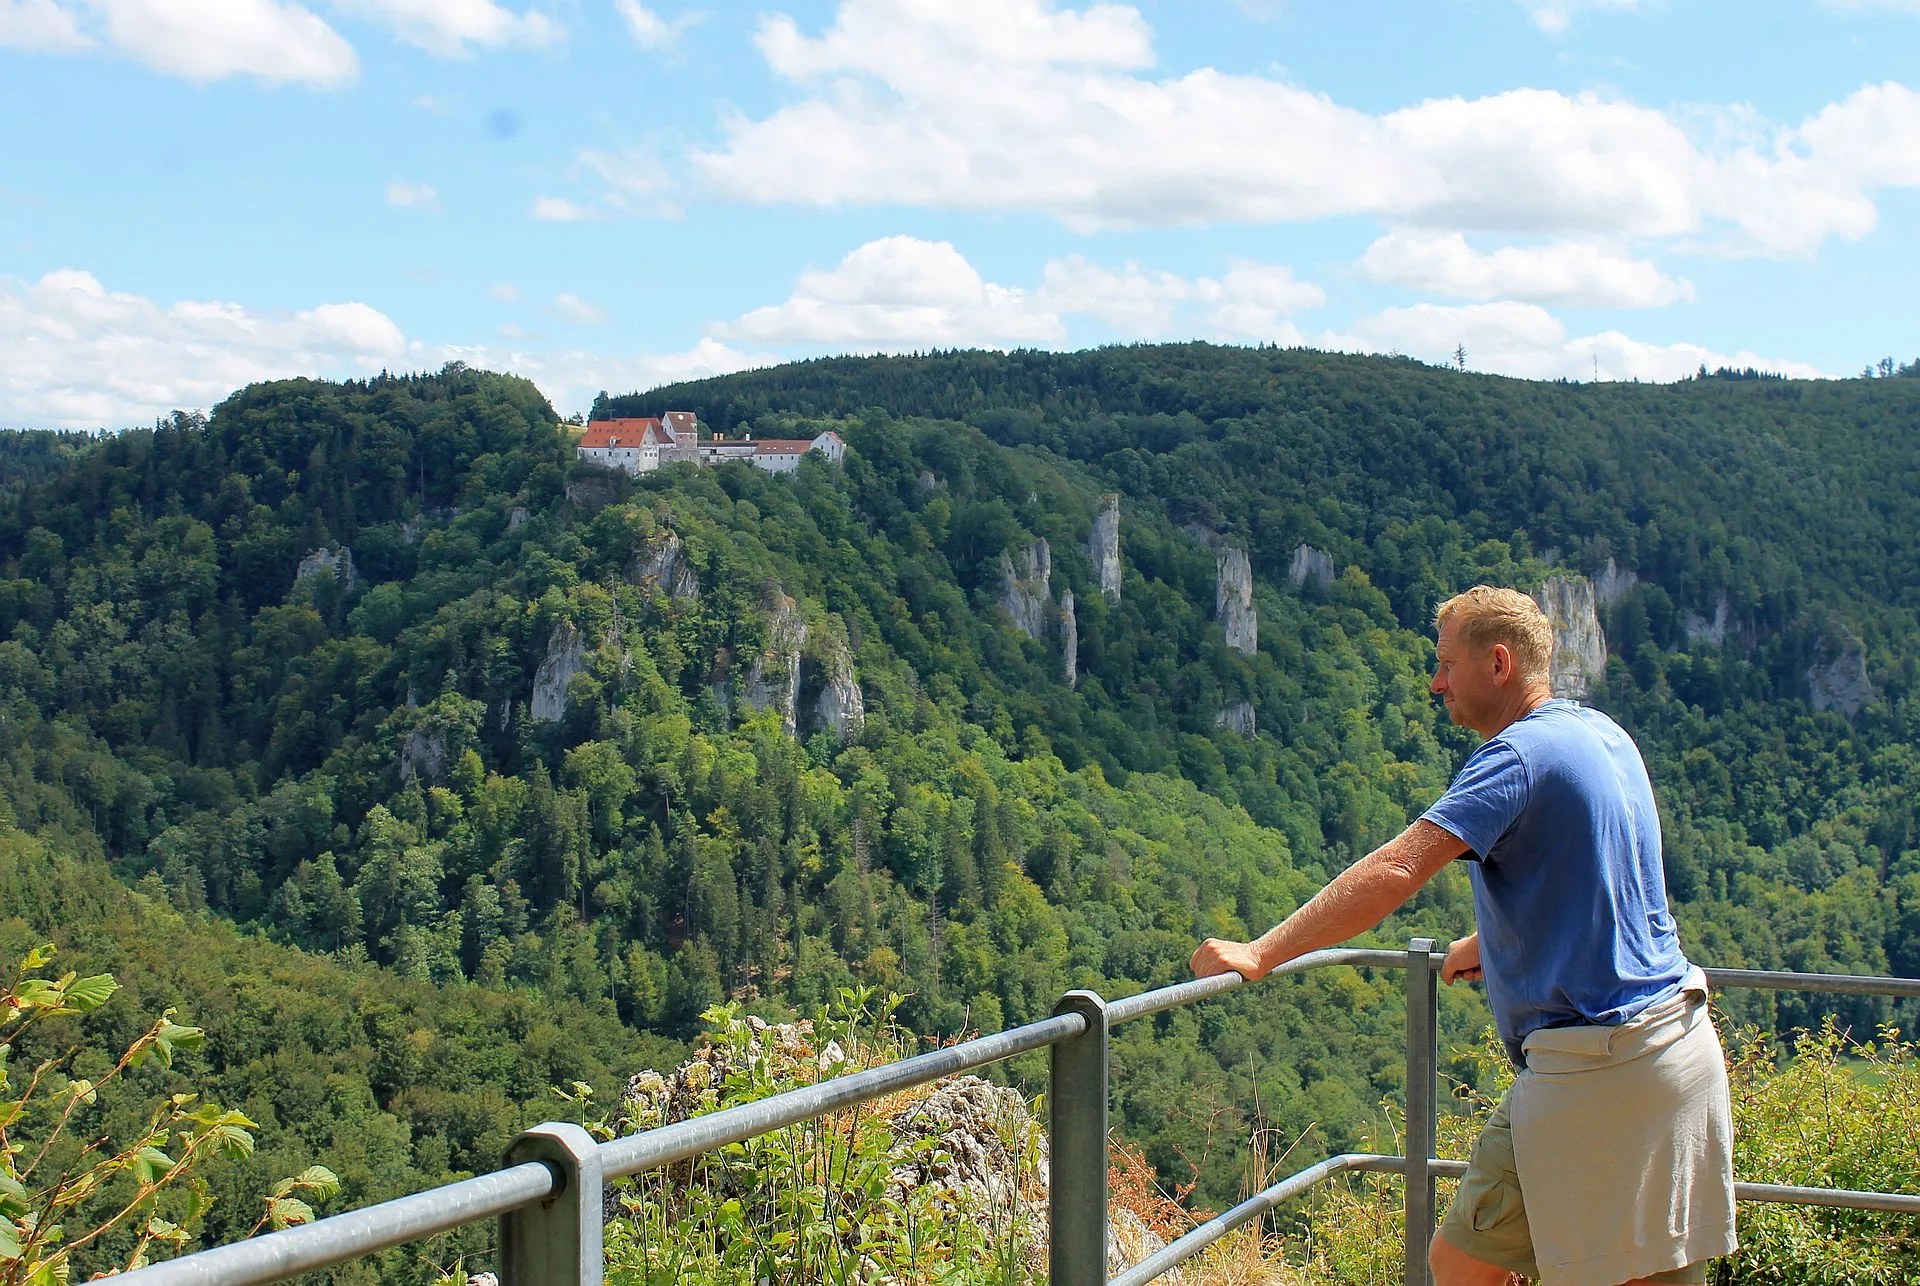 Bild von einem Wanderer der den Ausblick vom Eichfelsen auf Felsen und Baumlandschaft genießt